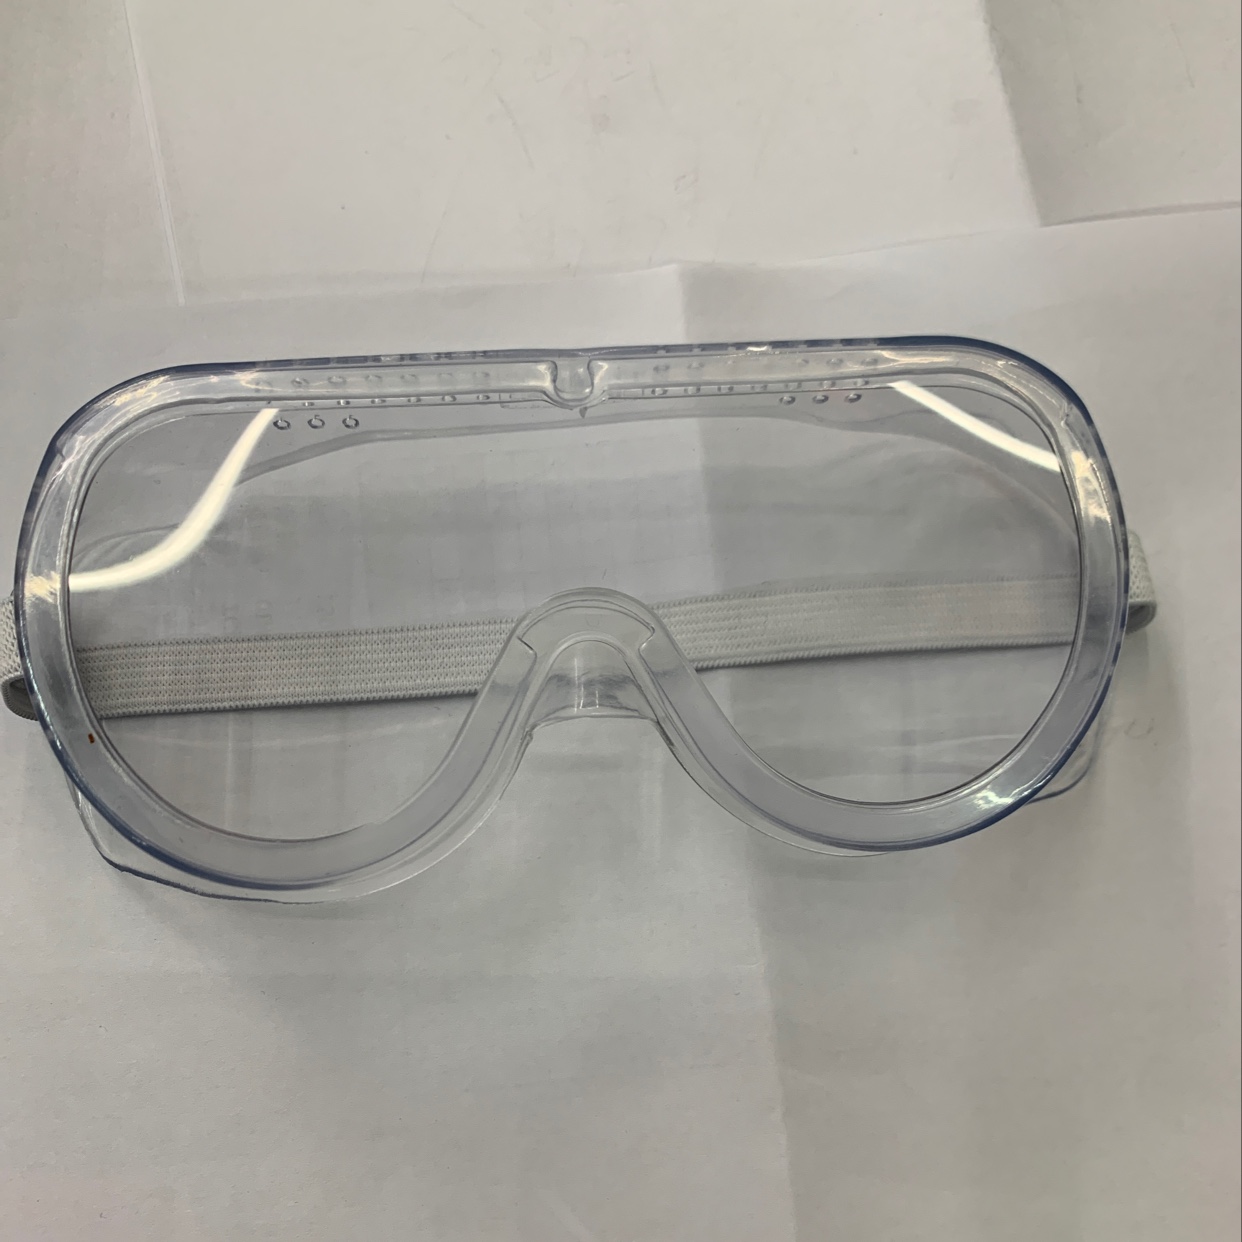 防护眼镜产品图